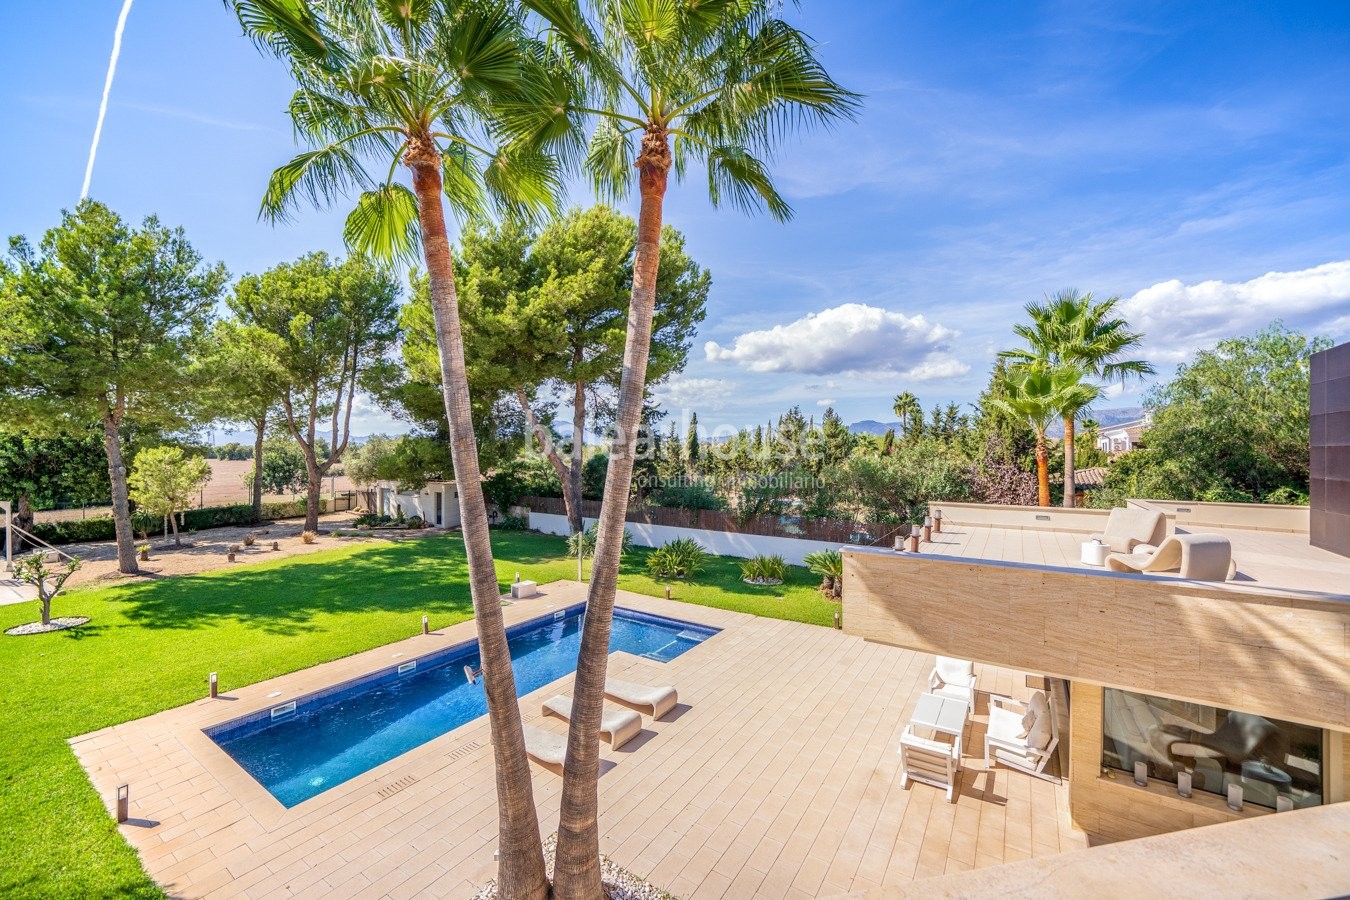 Moderne, lichtdurchflutete Villa mit großem Garten und Schwimmbad ganz in der Nähe von Palma.